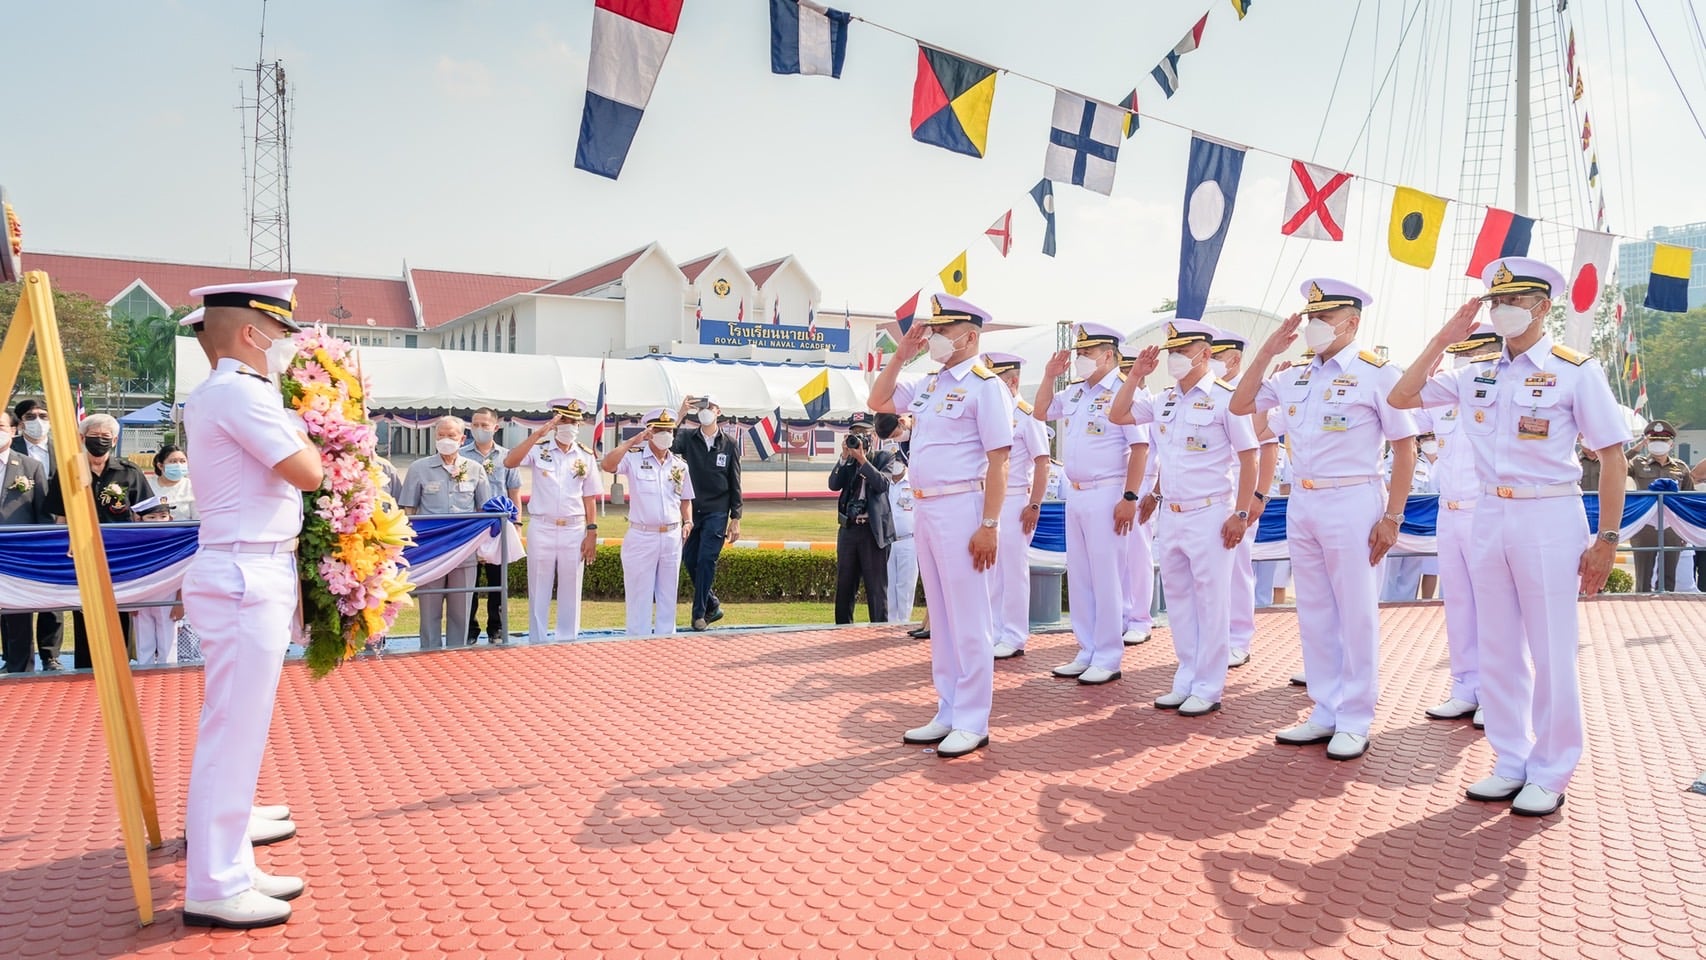 ผู้บัญชาการทหารเรือ เป็นประธานพิธีสดุดีวีรชนกองทัพเรือ เนื่องใน "วันสดุดีวีรชนกองทัพเรือ" ประจำปี ๒๕๖๕